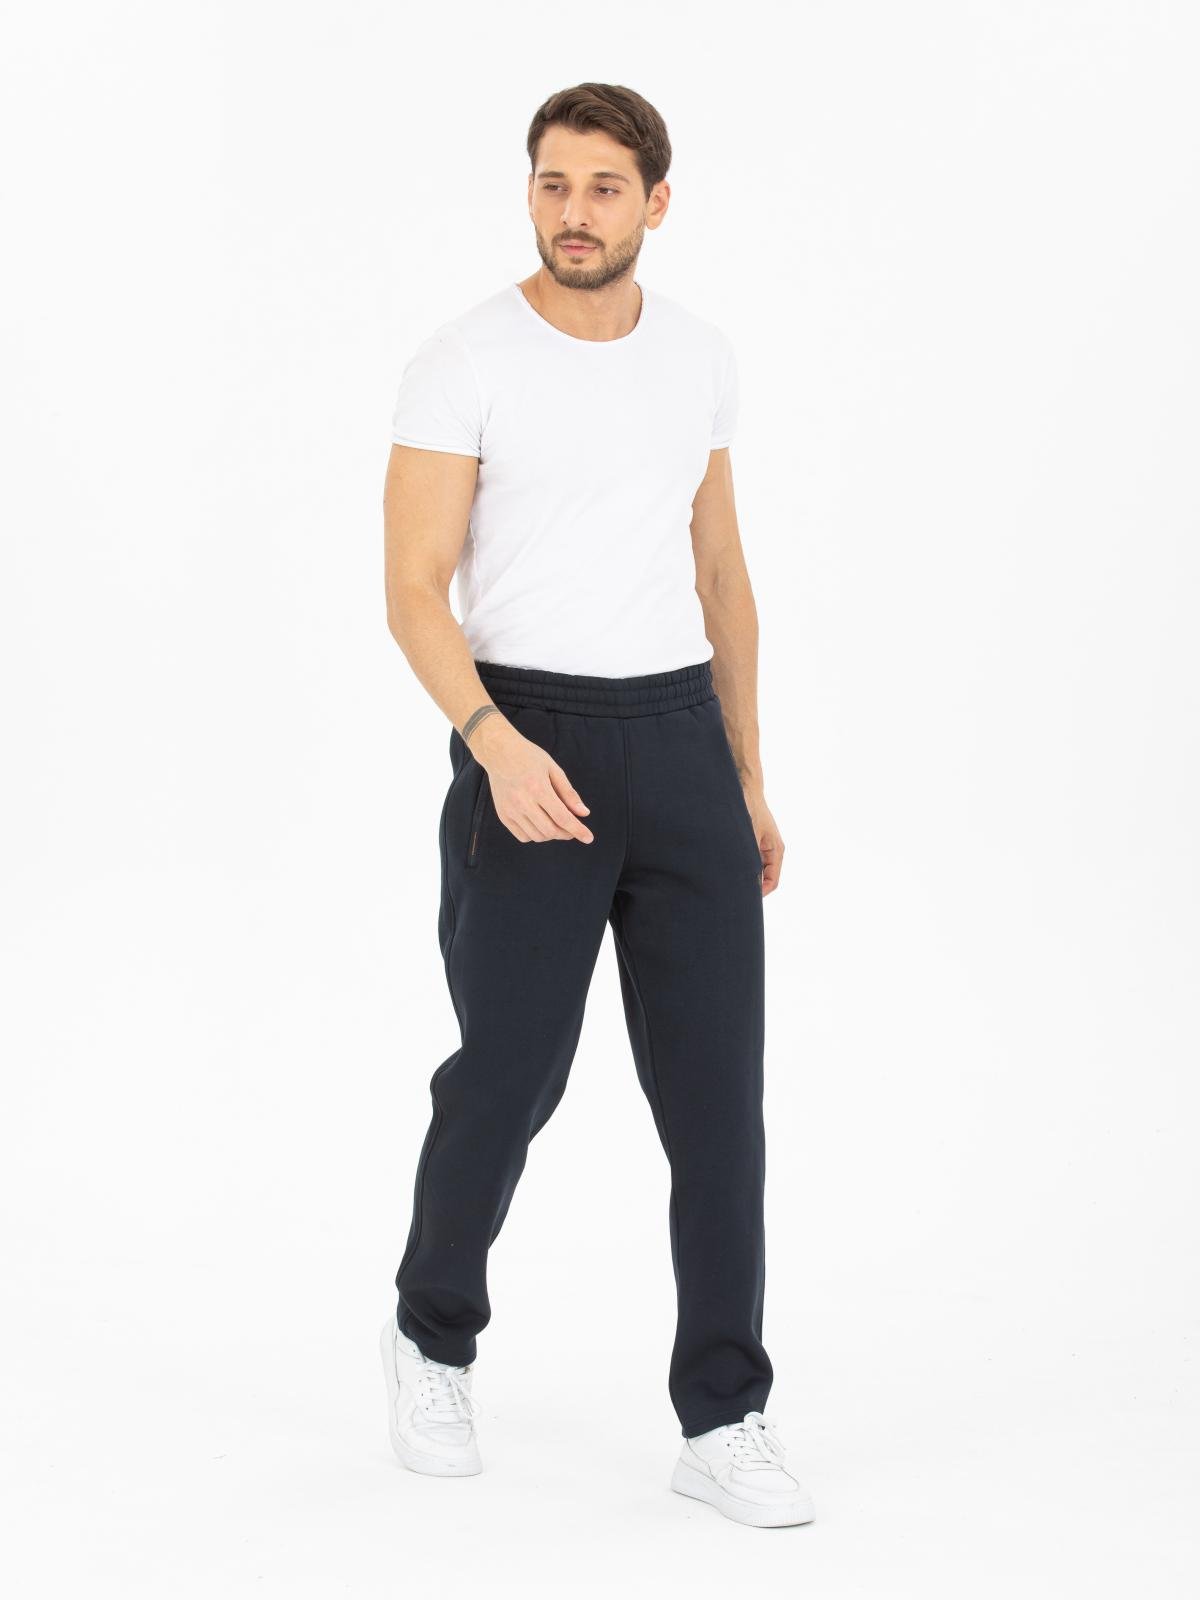 Men polar fleece sweatpants wholesale Navy color - Wholesale Clothing